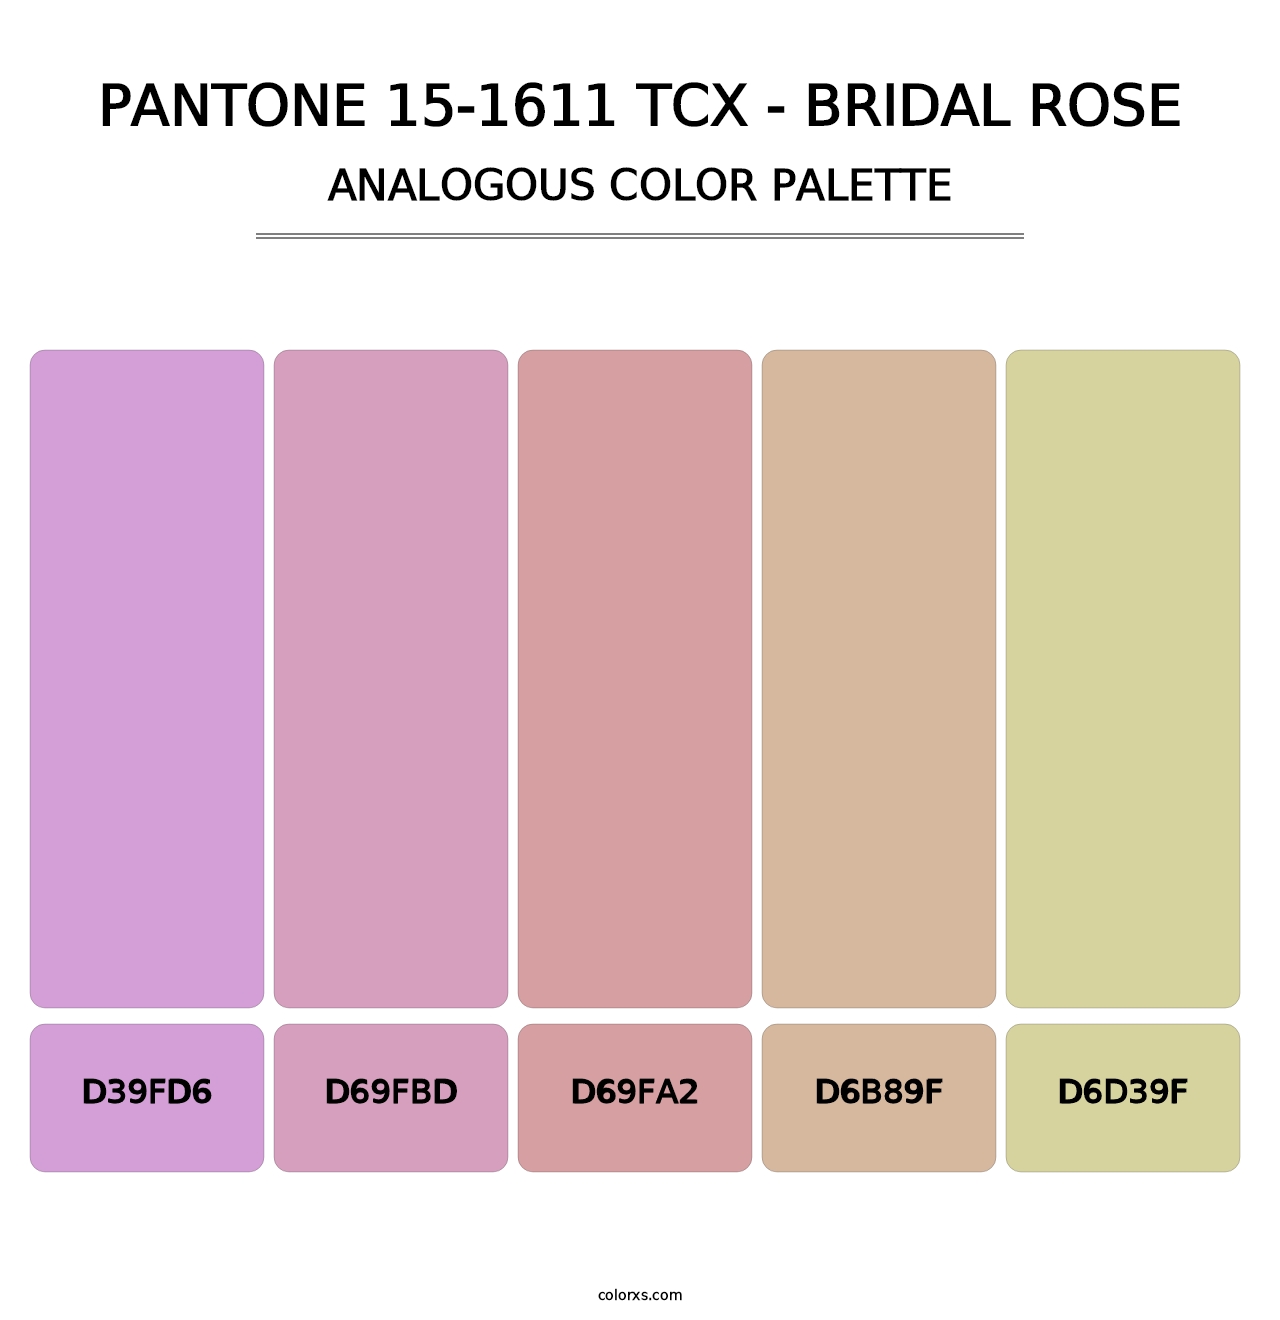 PANTONE 15-1611 TCX - Bridal Rose - Analogous Color Palette